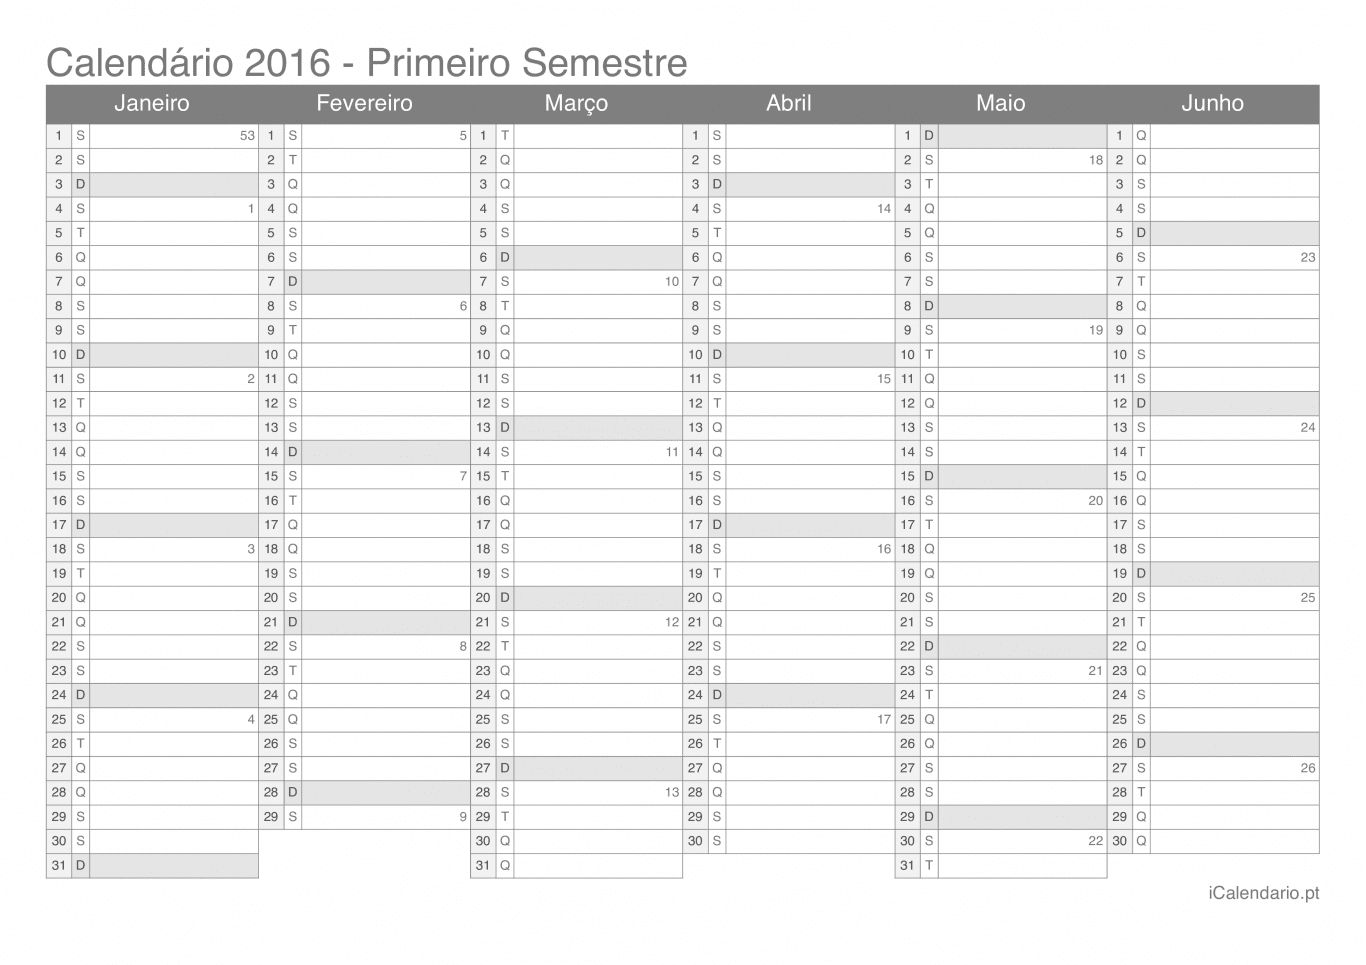 Calendário por semestre com números da semana 2016